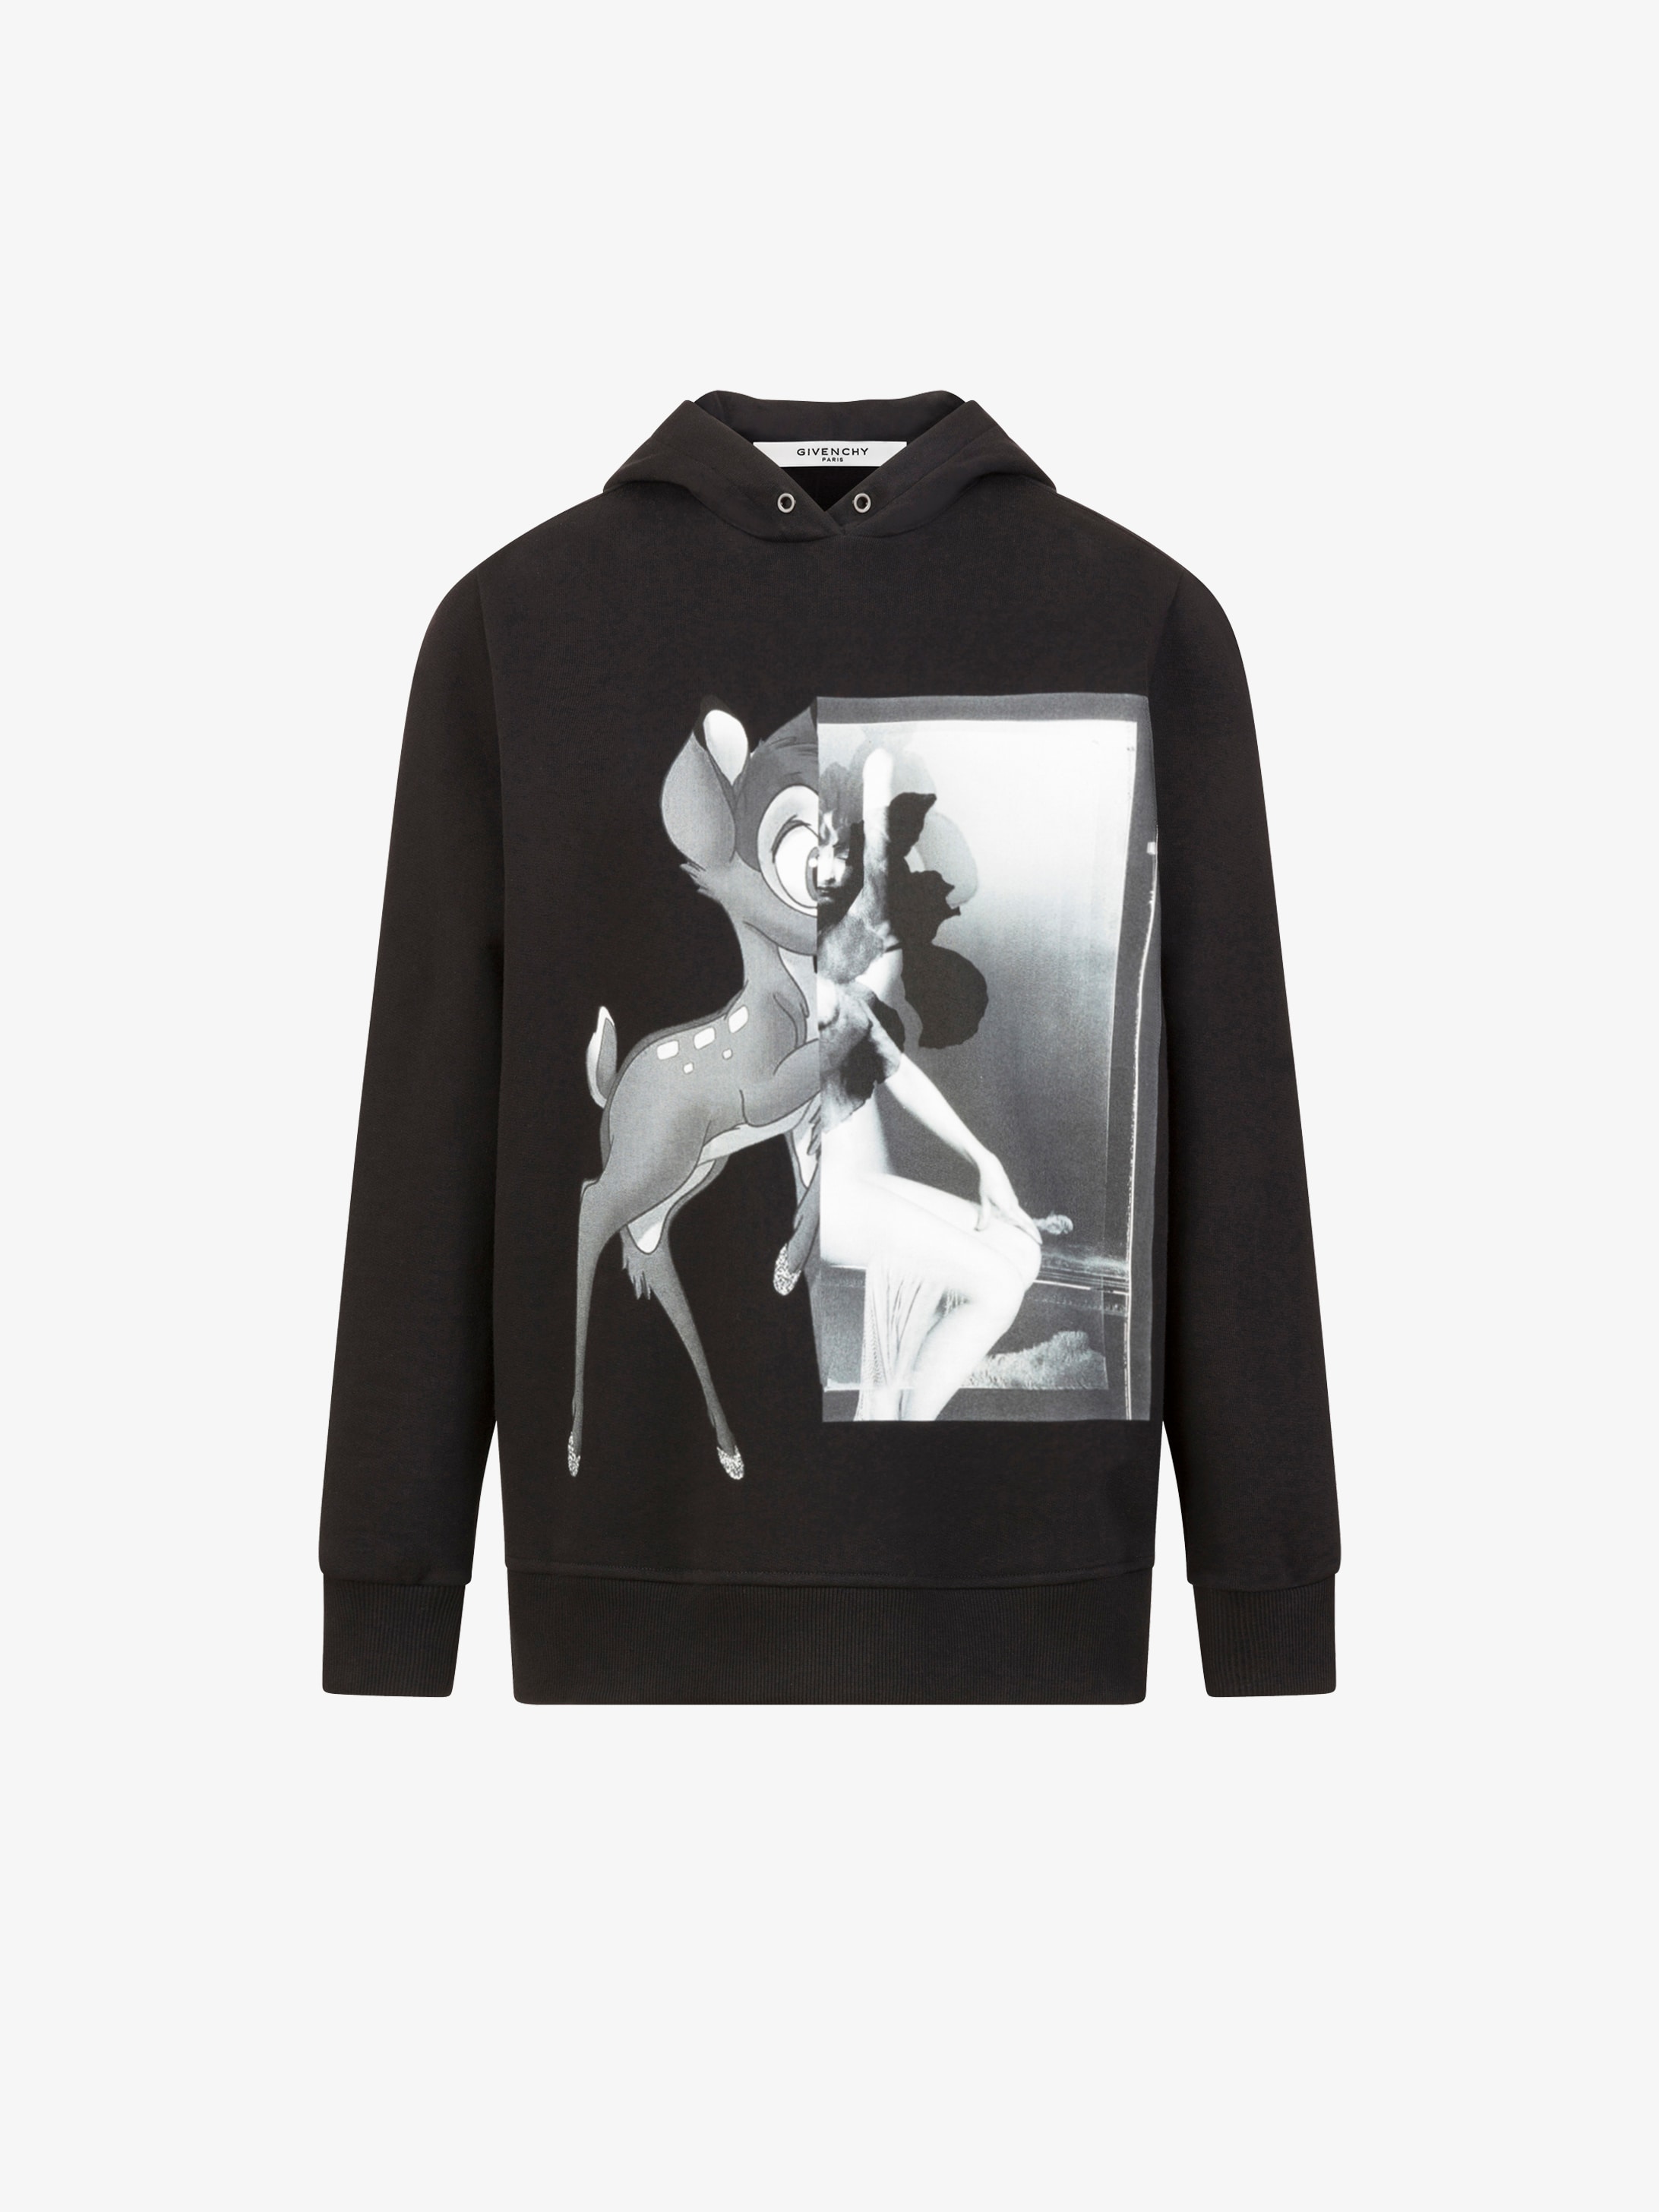 Givenchy Bambi printed sweatshirt | GIVENCHY Paris